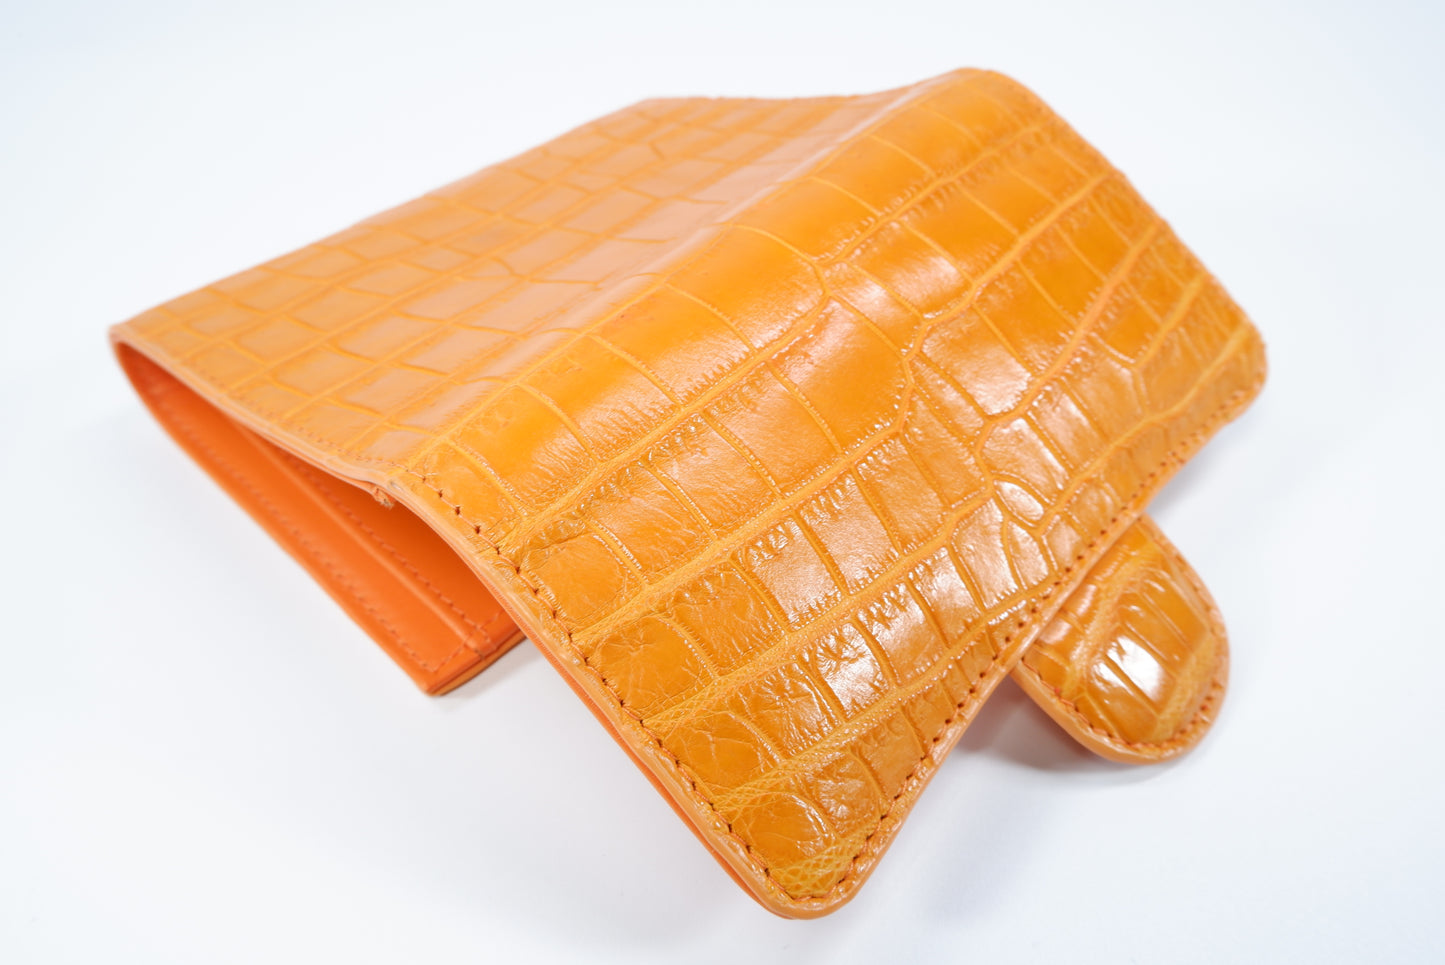 Genuine Crocodile Belly Skin Leather Medium Trifold Clutch Wallet Purse